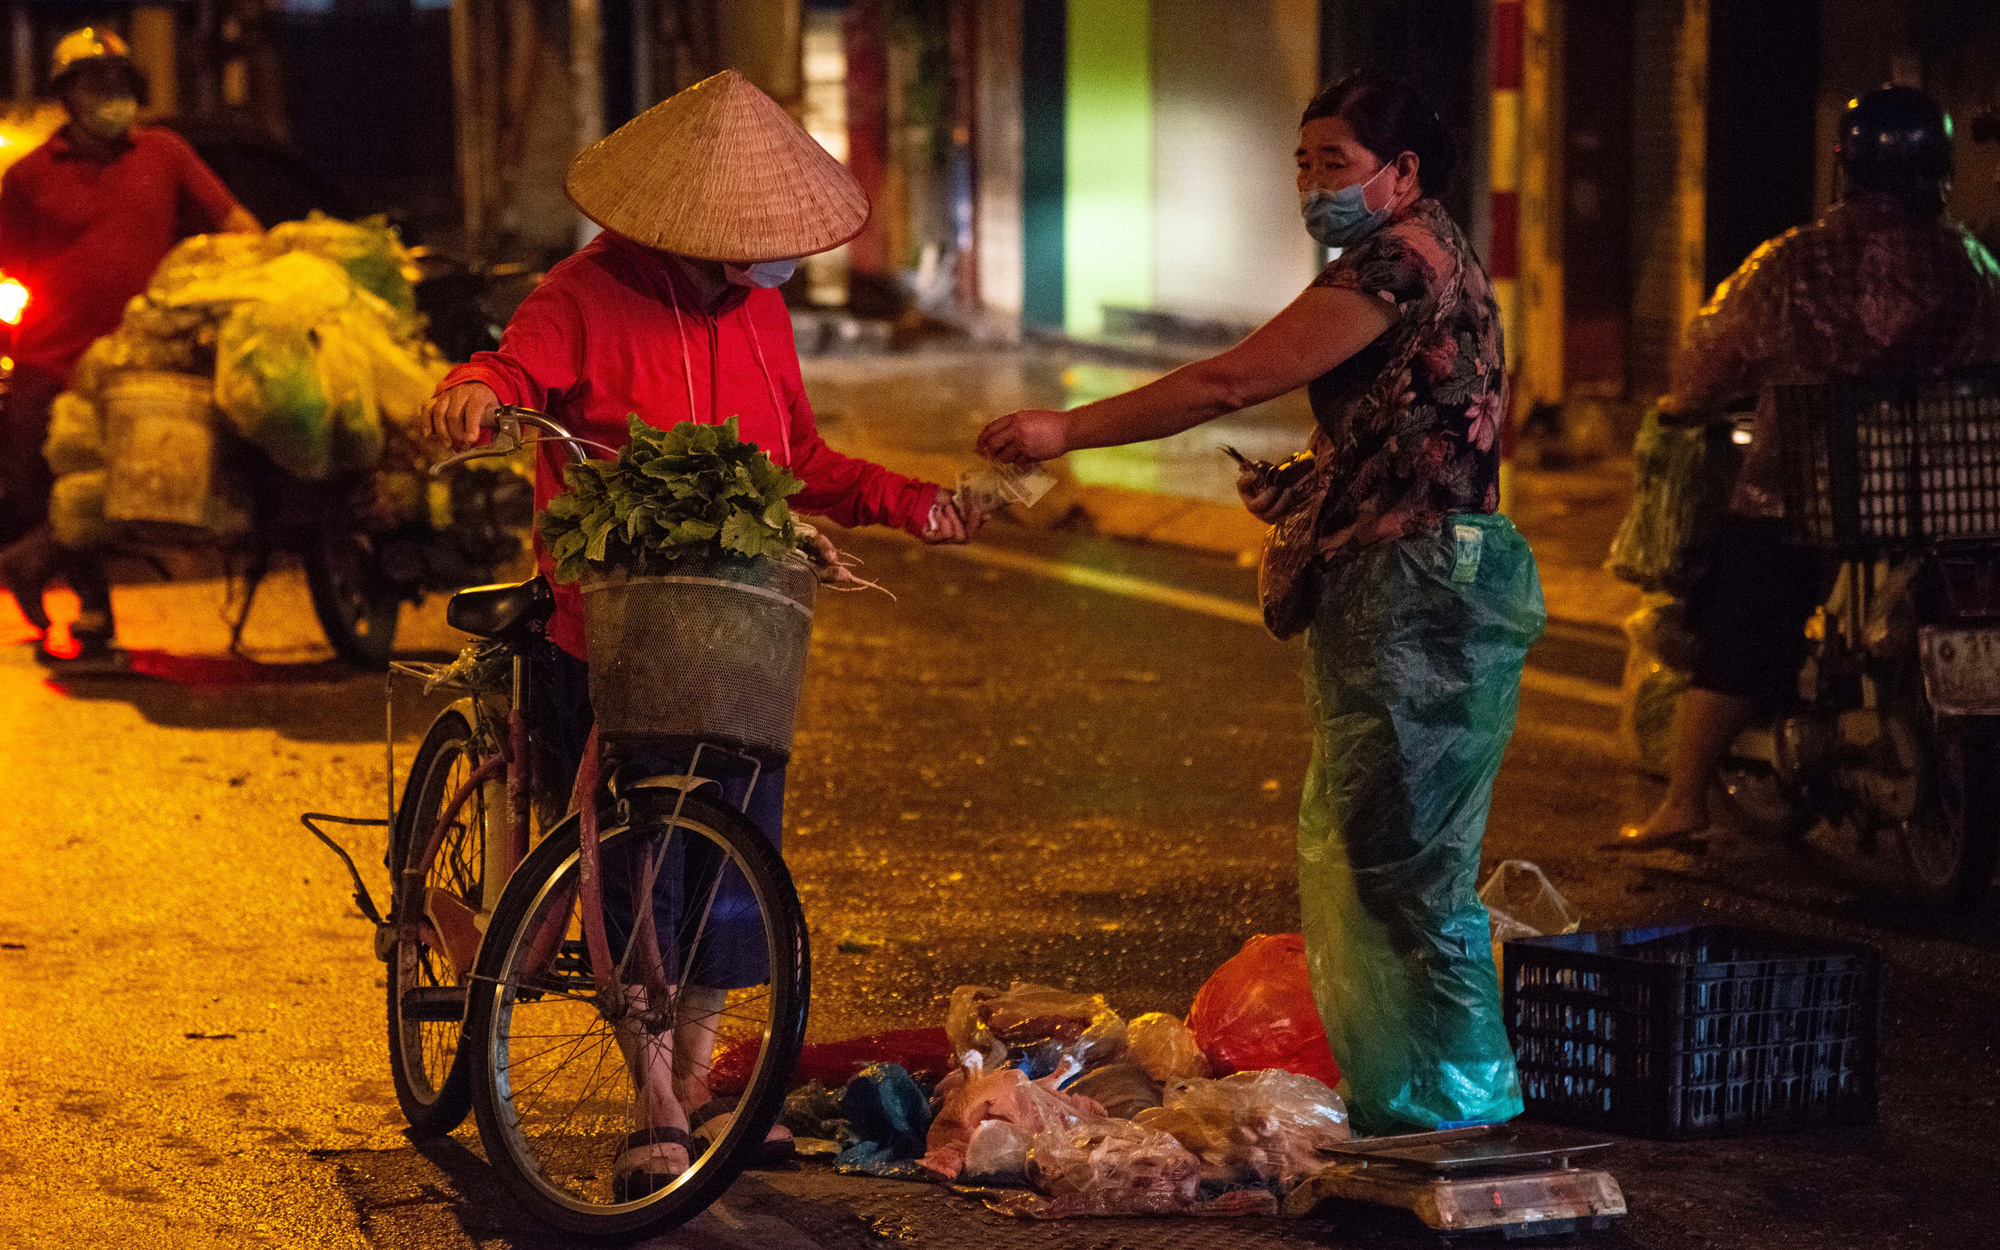 Hà Nội: Người dân đi chợ từ tờ mờ sáng để tránh chốt kiểm soát phòng chống dịch Covid-19